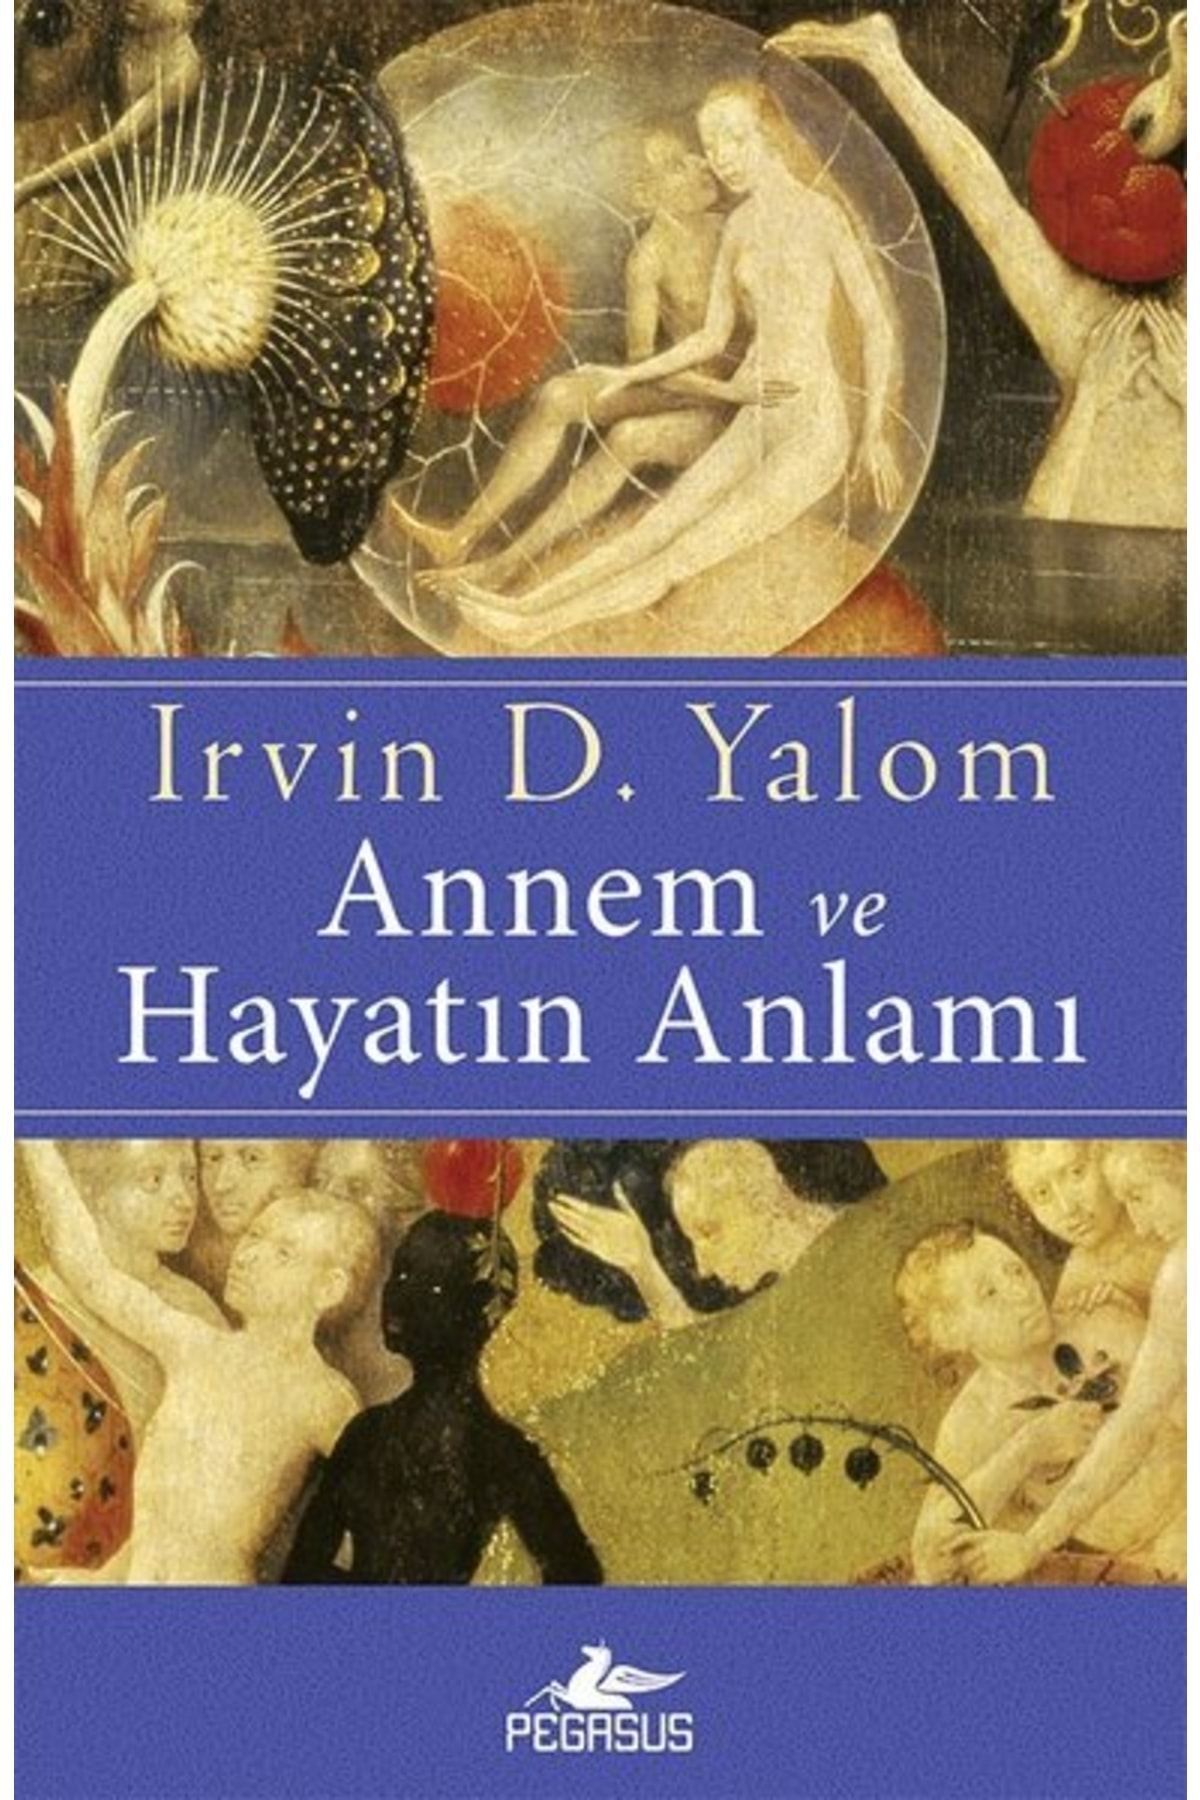 Pegasus Yayınları Annem Ve Hayatın Anlamı - Irvin D. Yalom